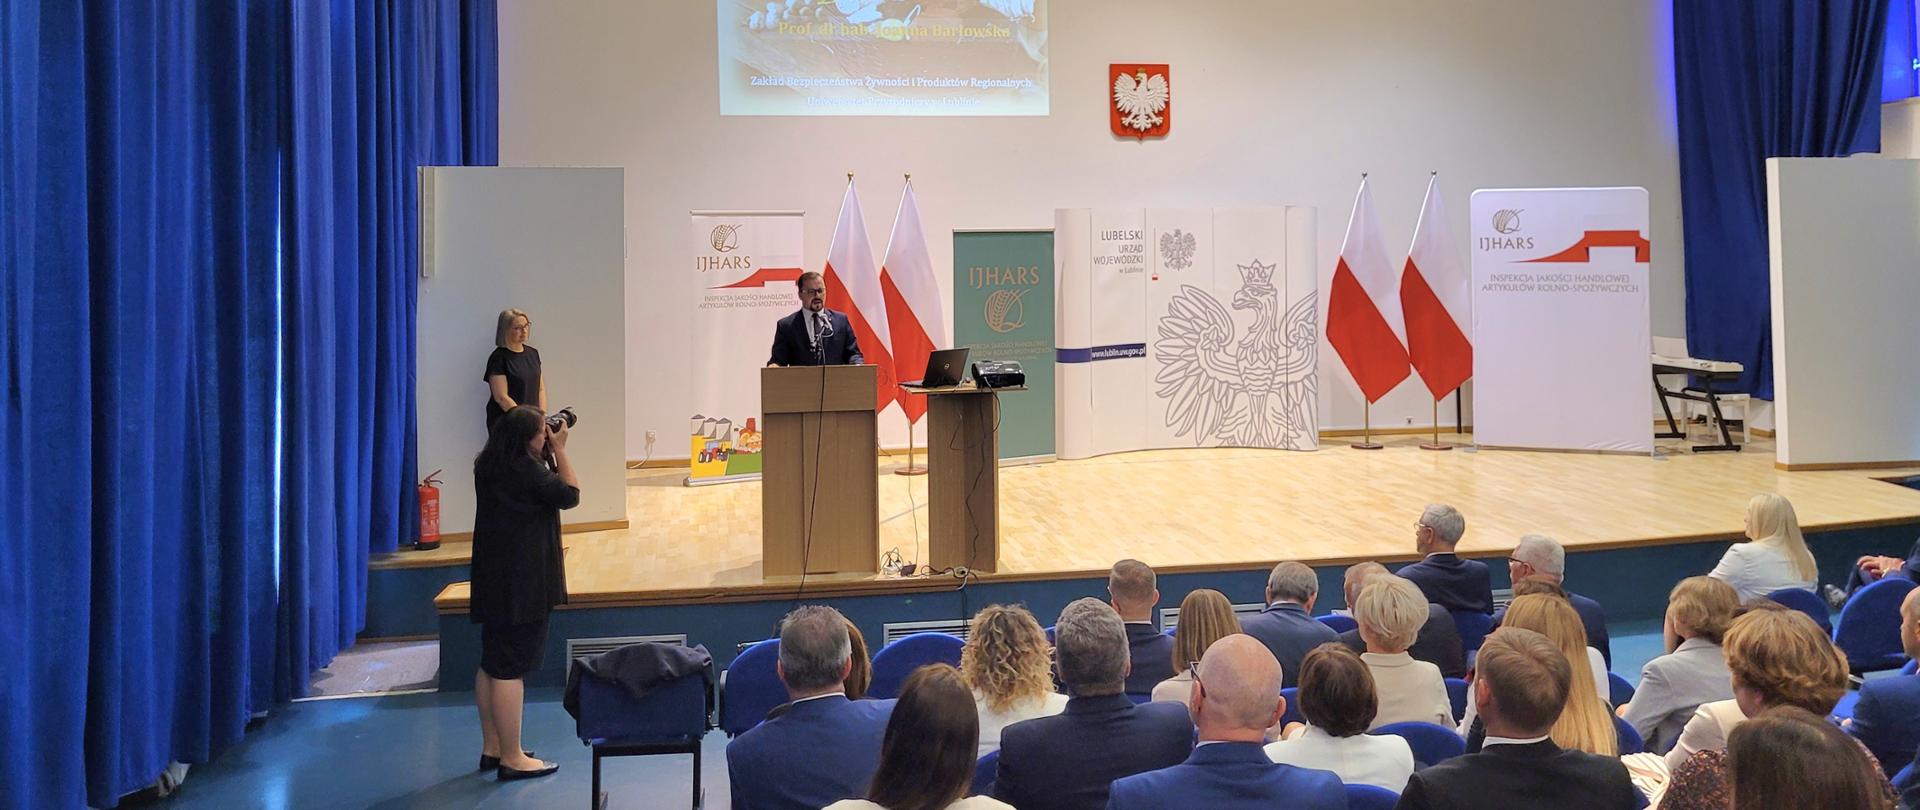 Wystąpienie Przemysława Rzodkiewicza, GIJHARS podczas konferencji "Lubelskie smaki", widok ogólny sali 